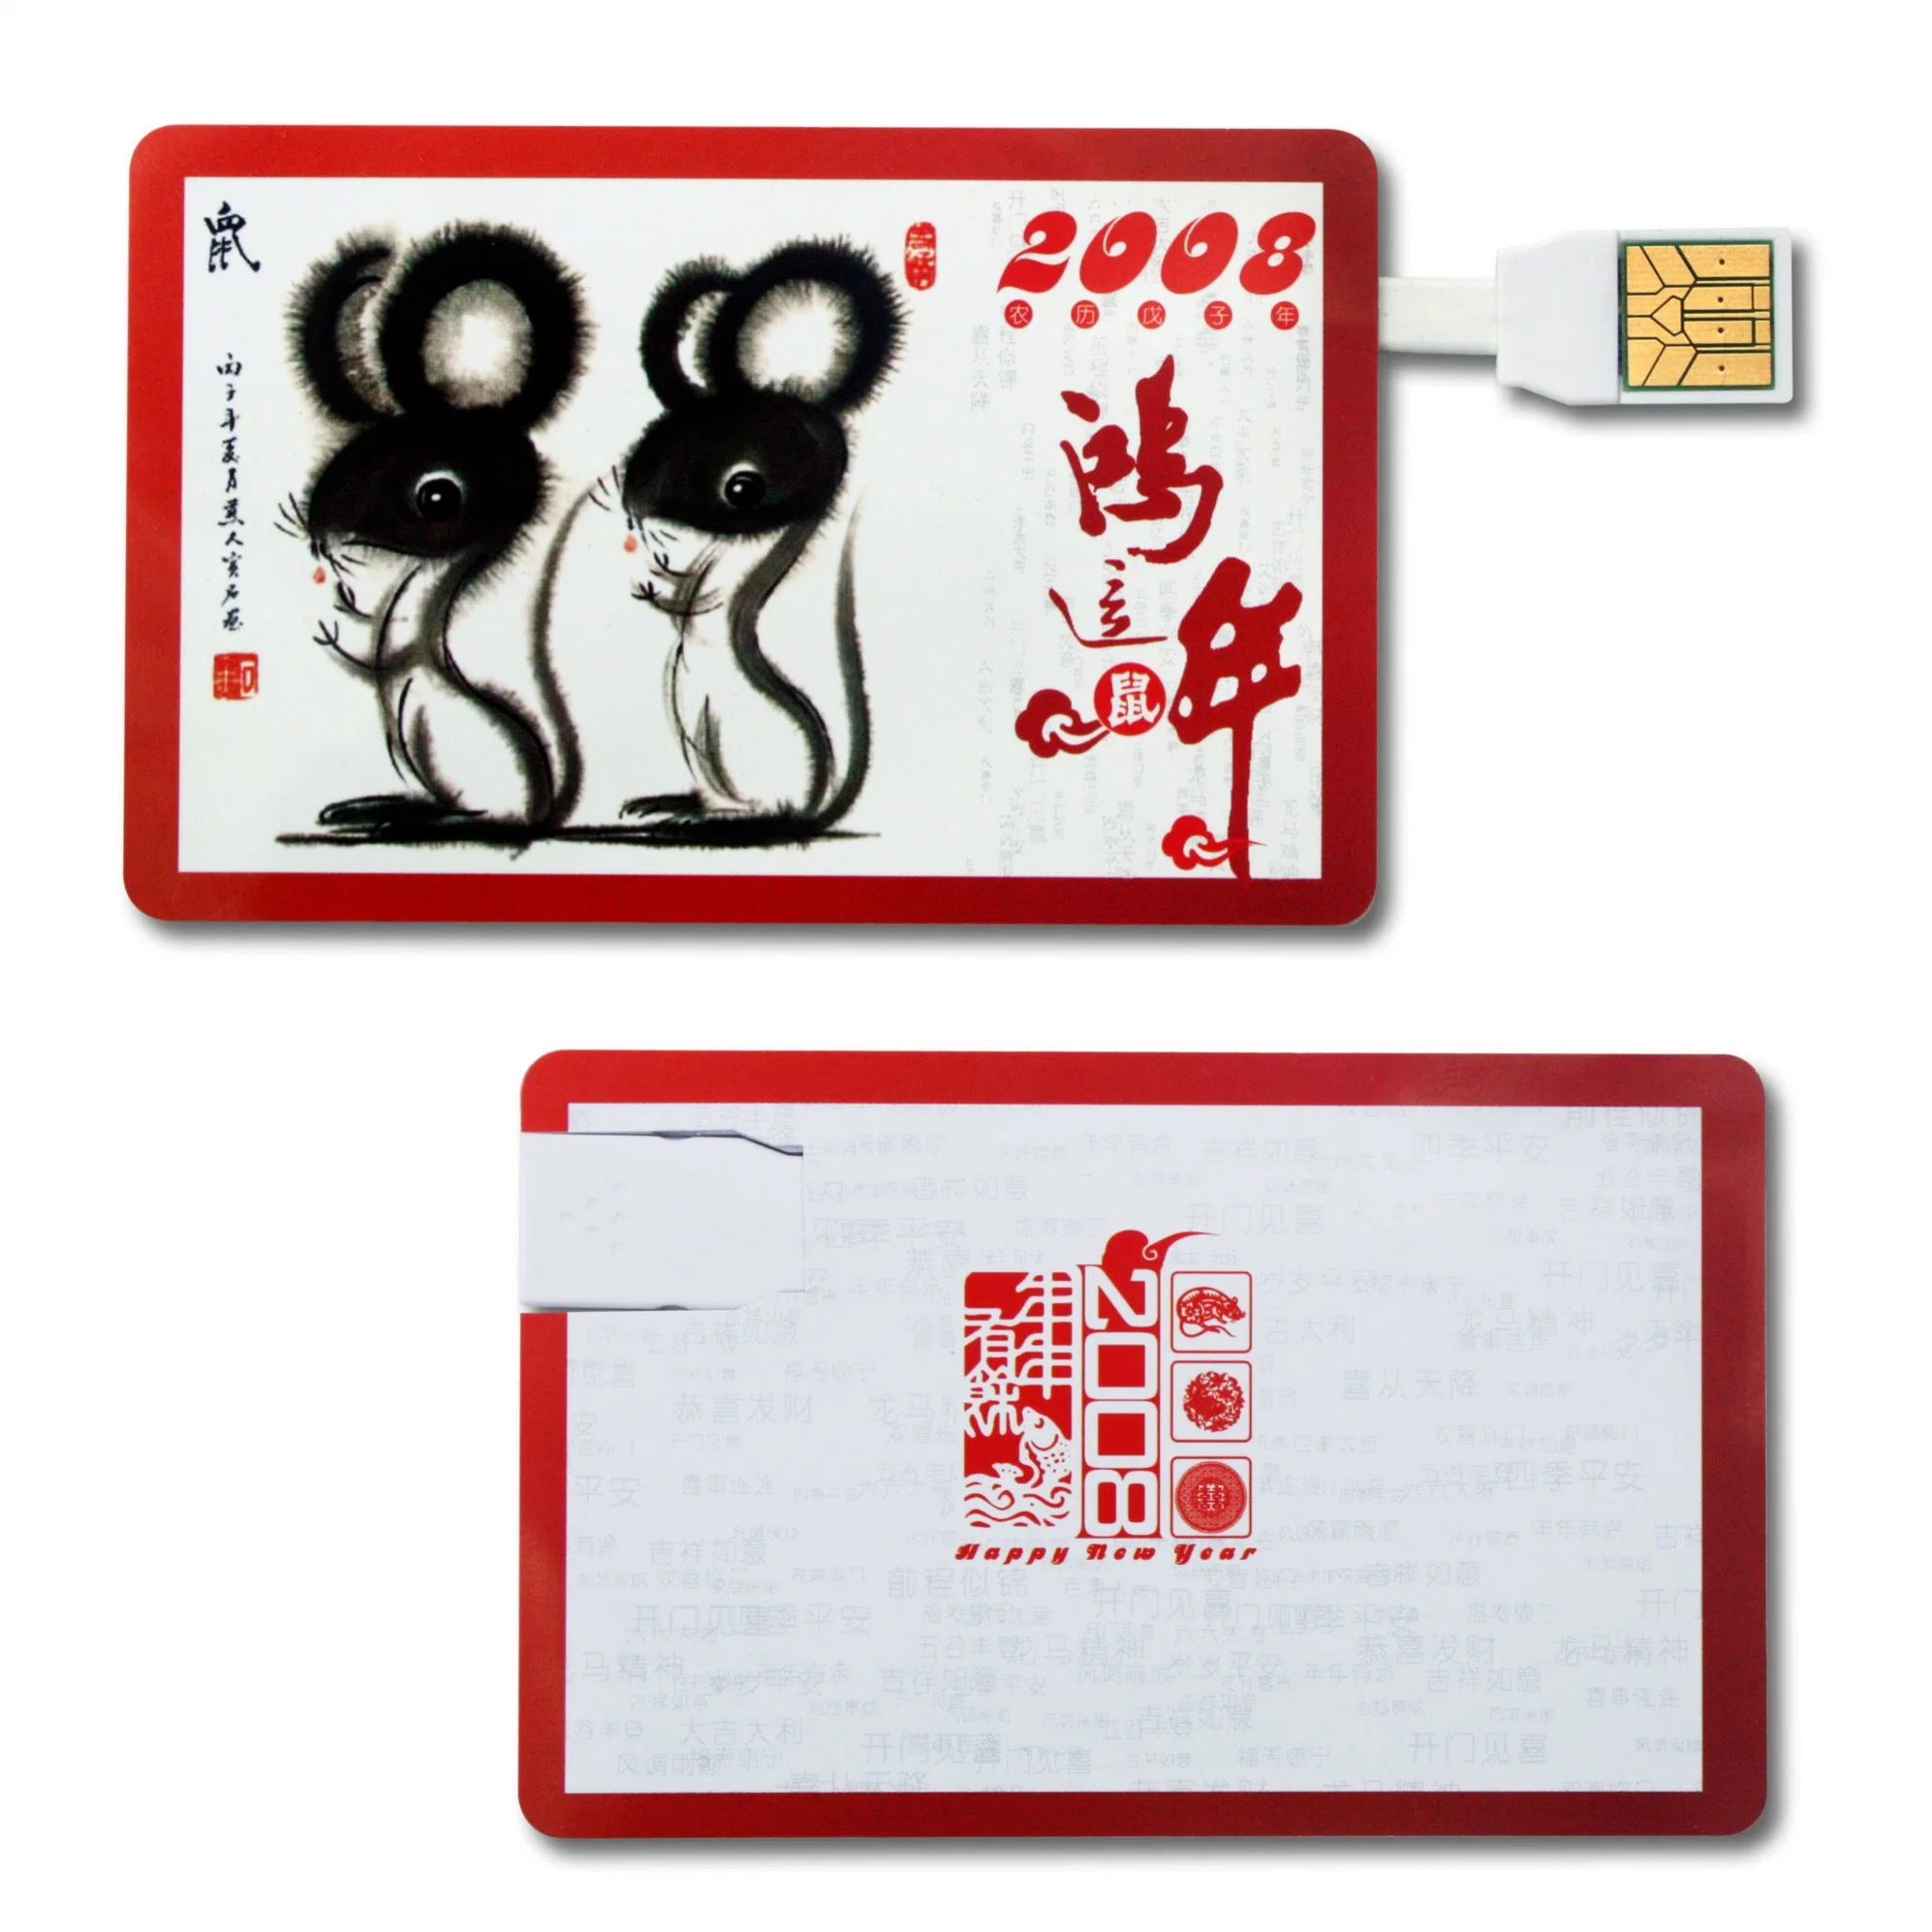 بطاقة ائتمان جديدة من Trend قرص USB للكمبيوتر